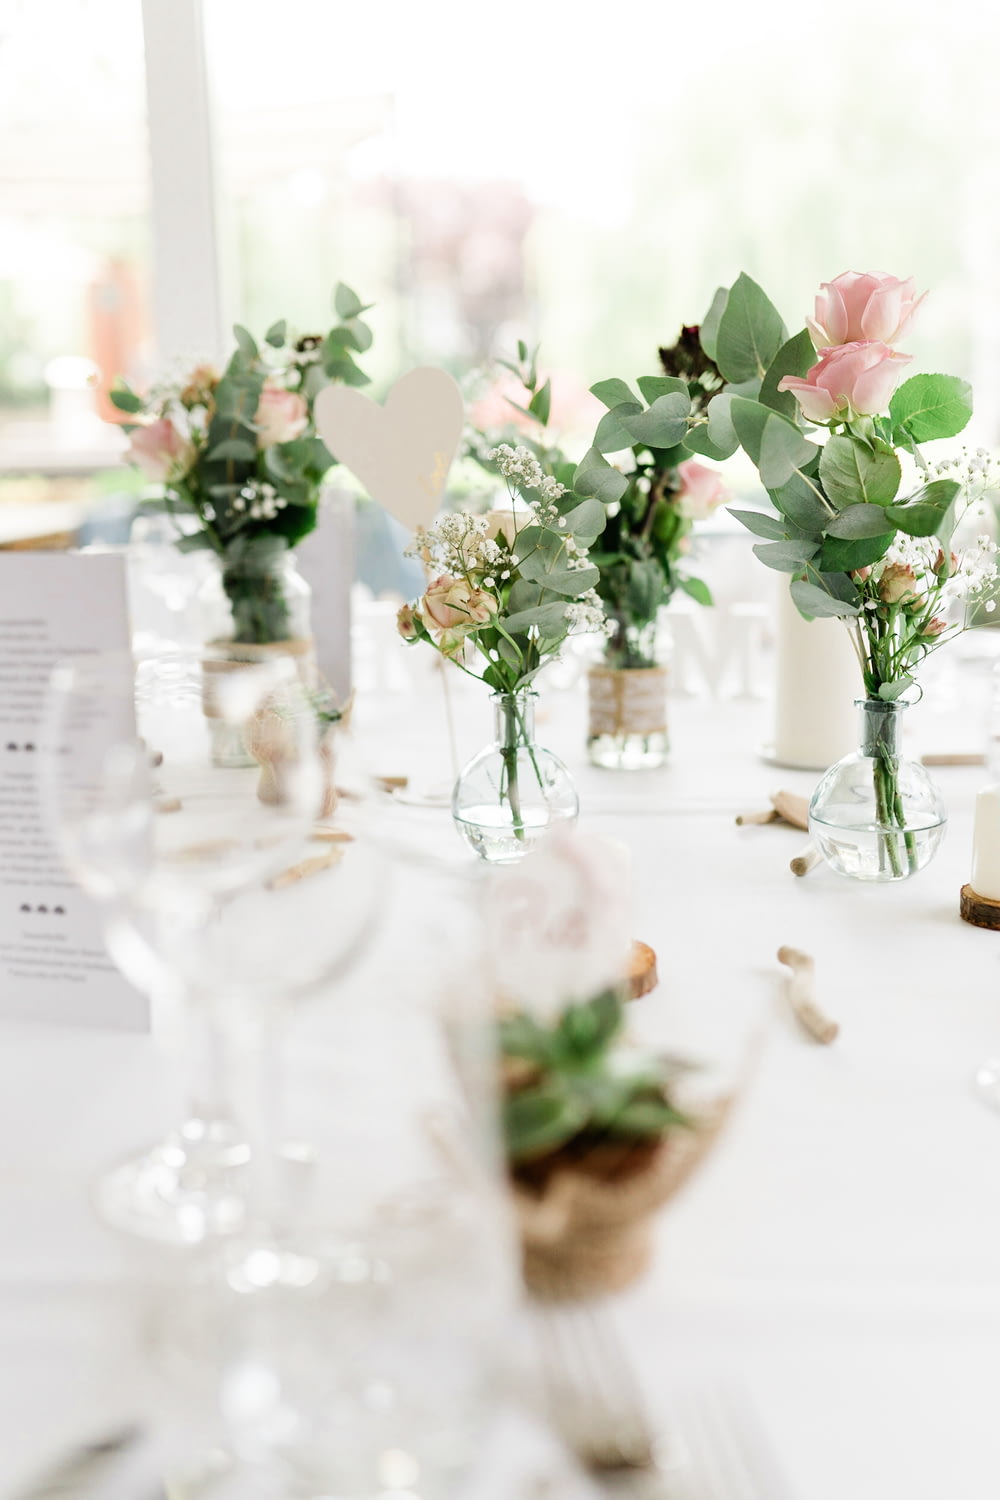 ピンクと白のバラ、テーブルの上の透明なガラスの花瓶